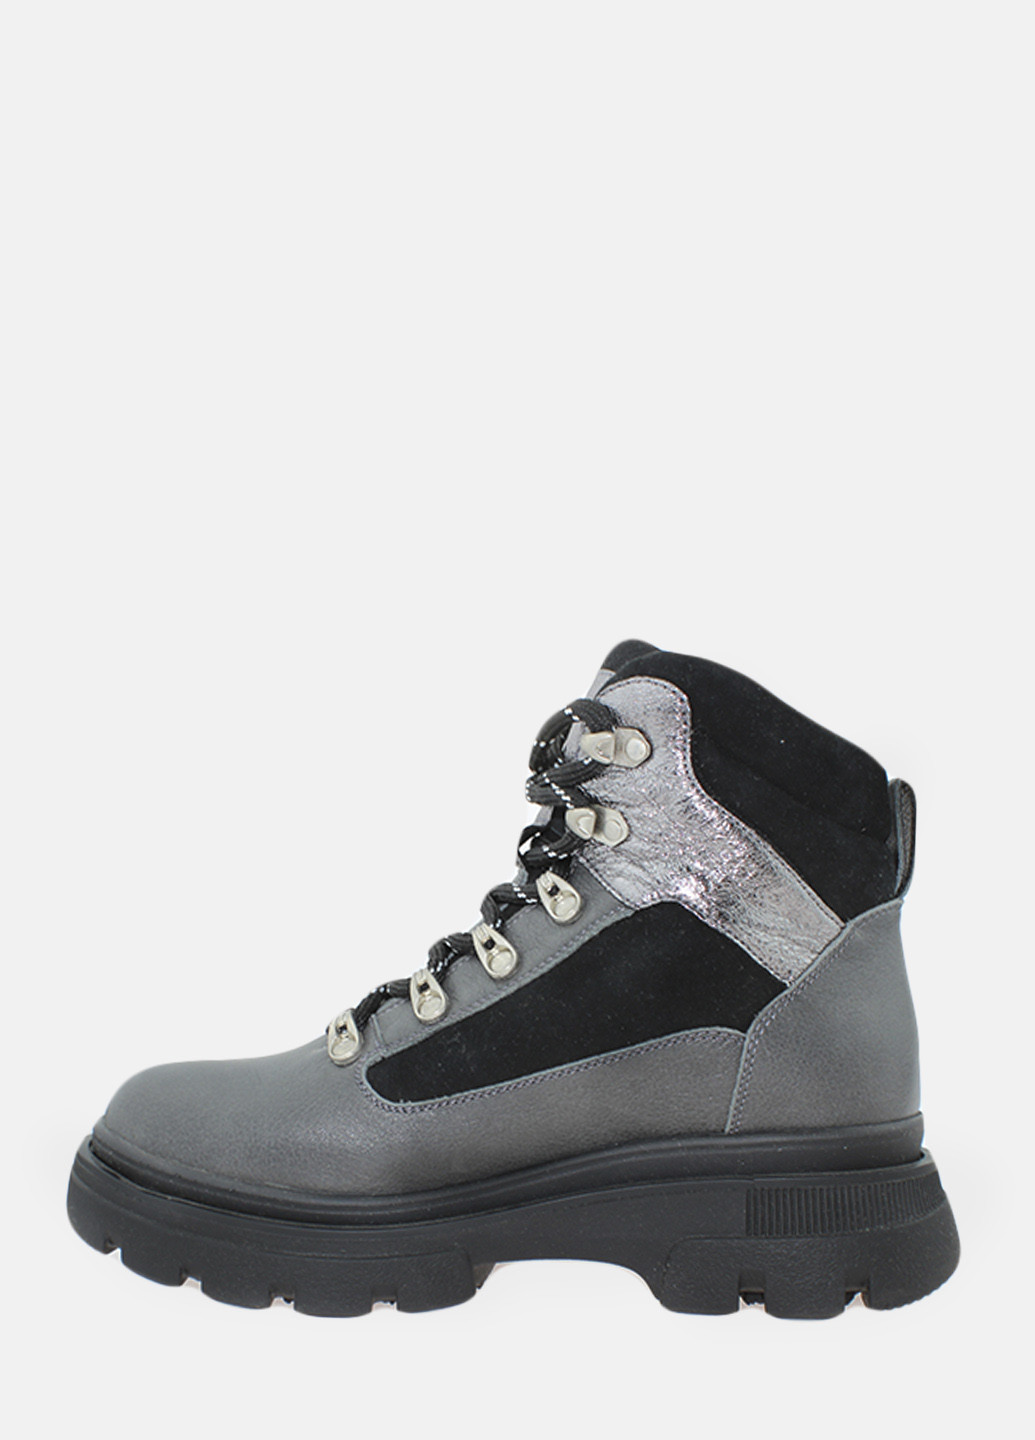 Зимние ботинки rf1511 серый-черный Favi из натуральной замши